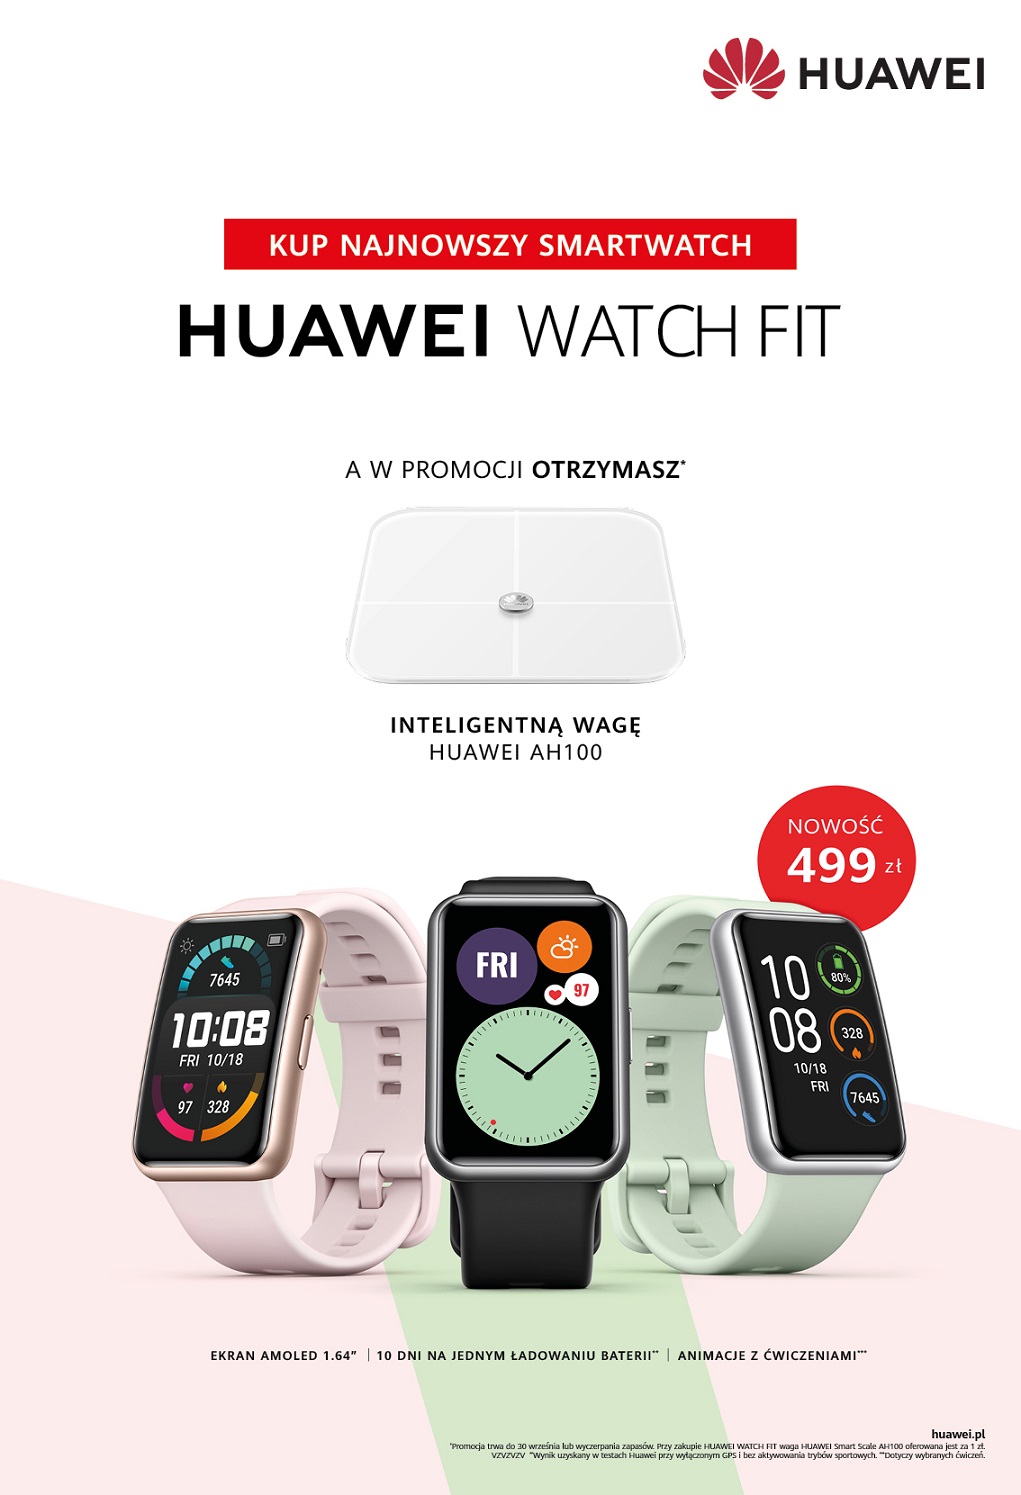 Huawei watch Fit cena w :olsce opinie gdzie kupić najtaniej specygikacja dane techniczne funkcje